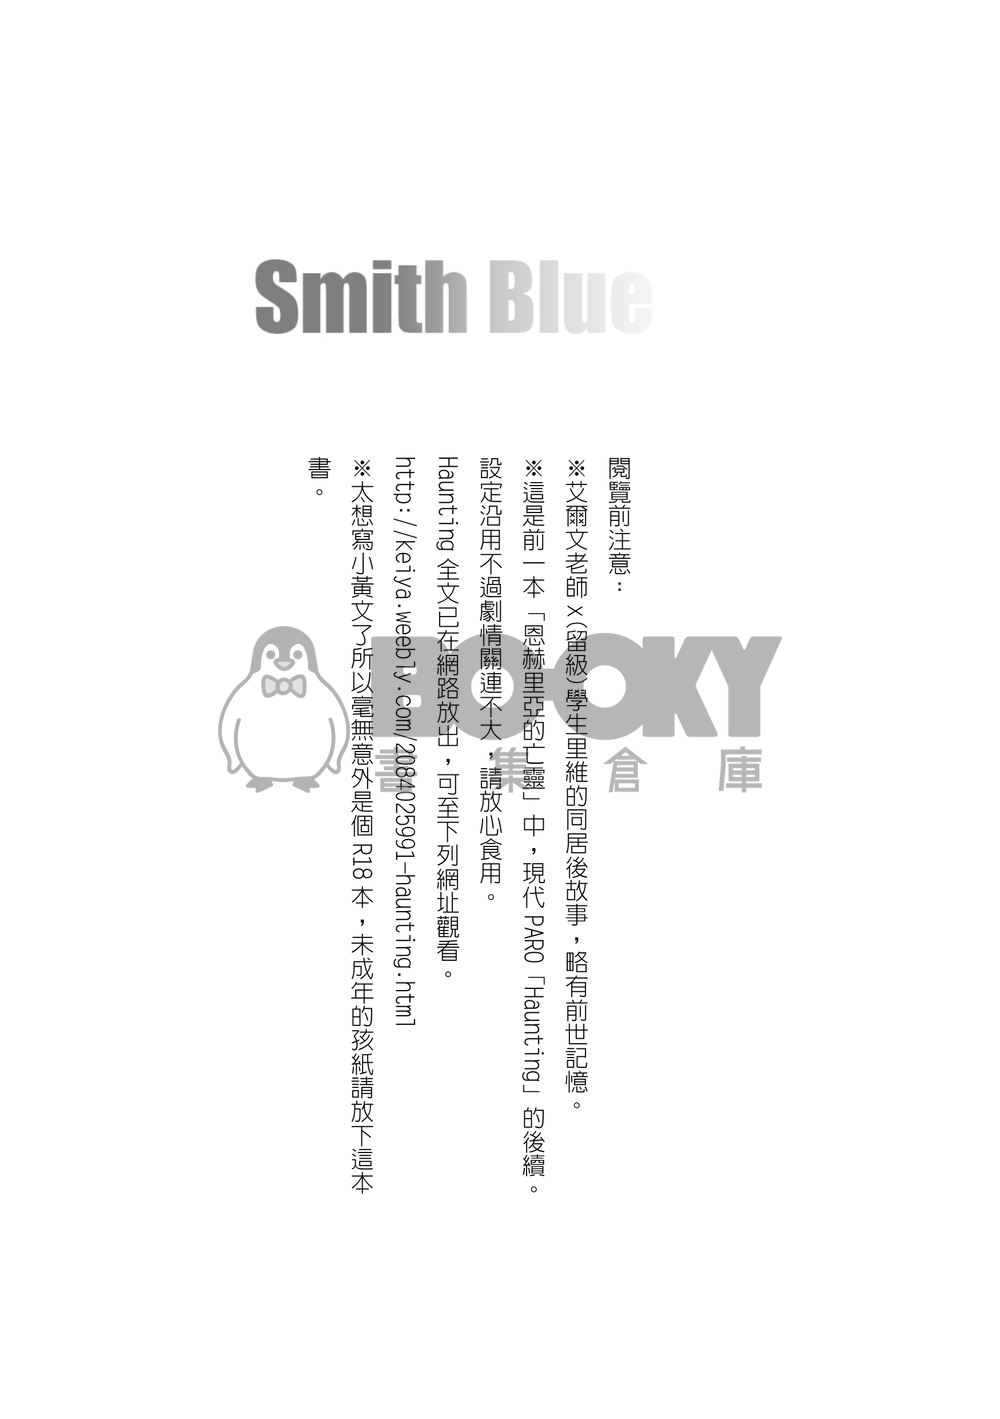 CWT36團兵新刊 Smith Blue 試閱圖片